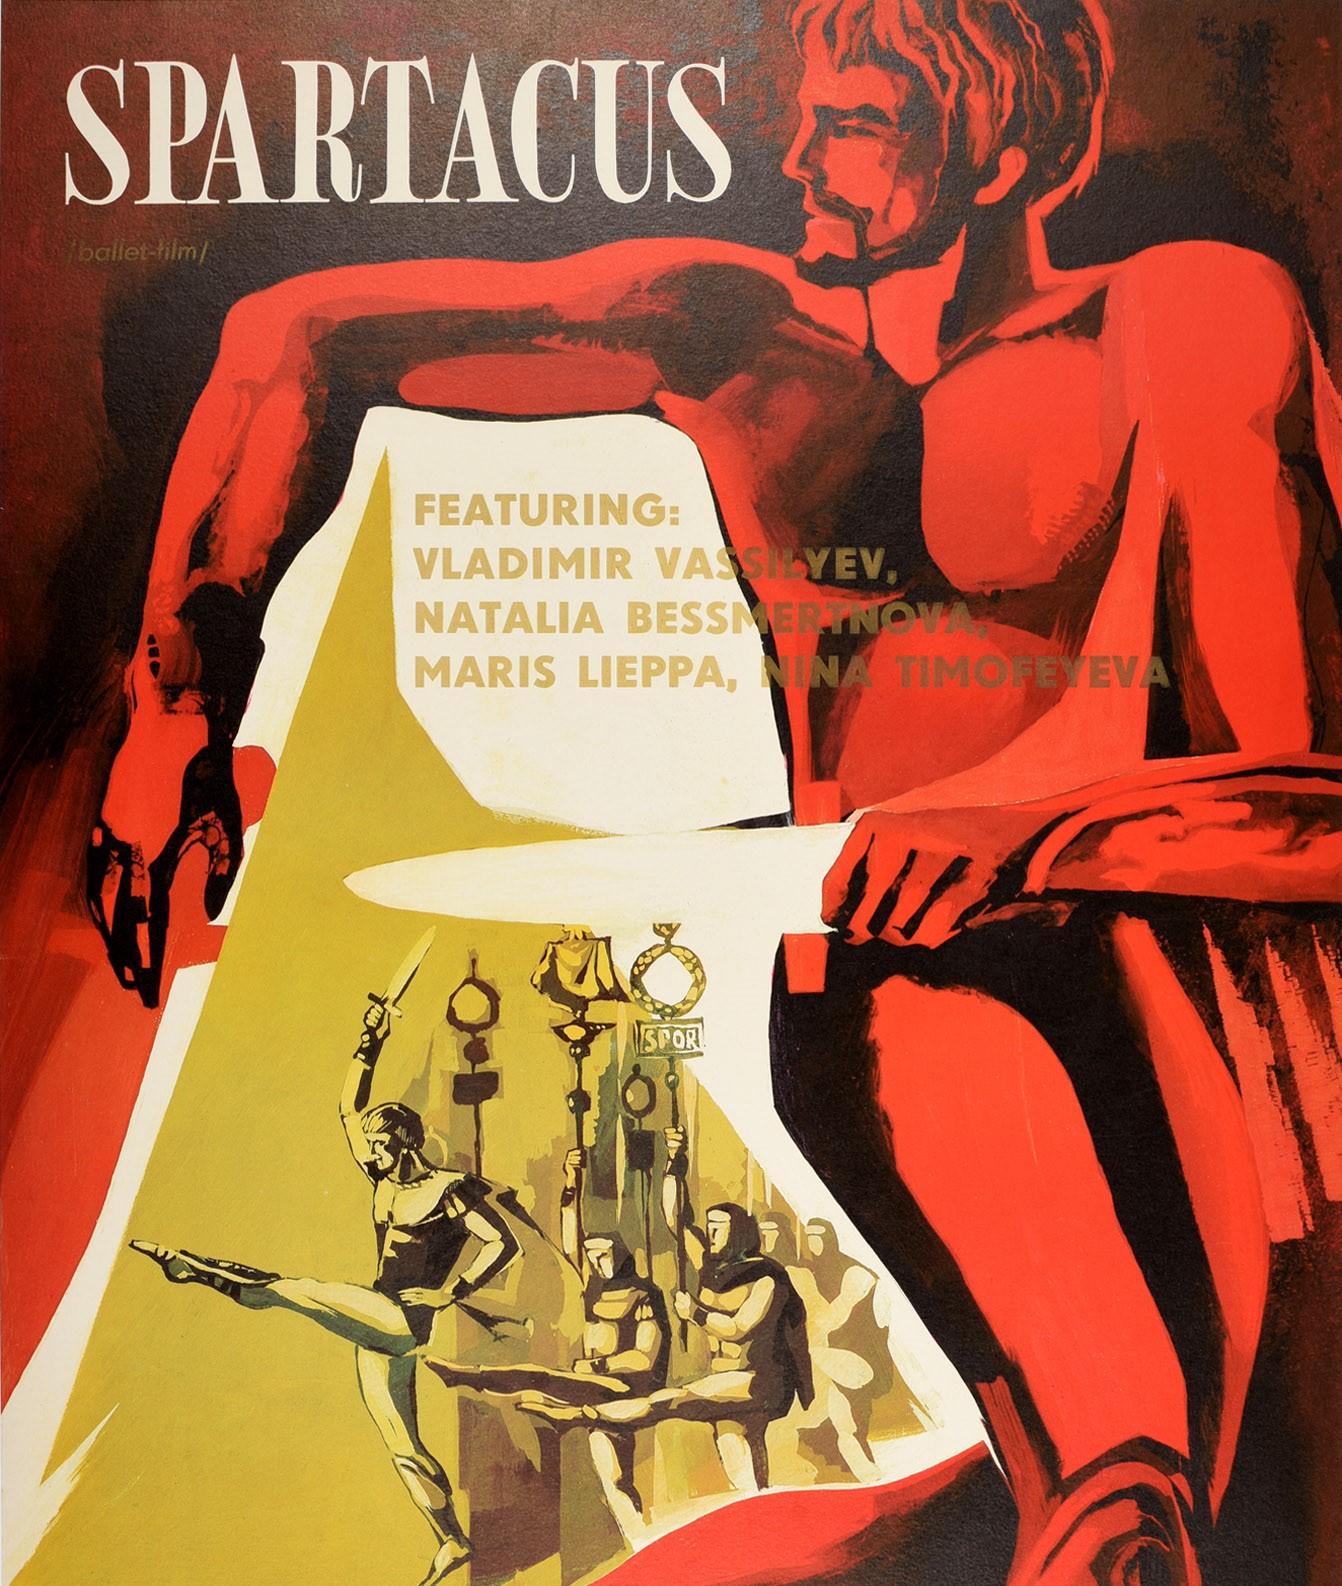 spartacus poster